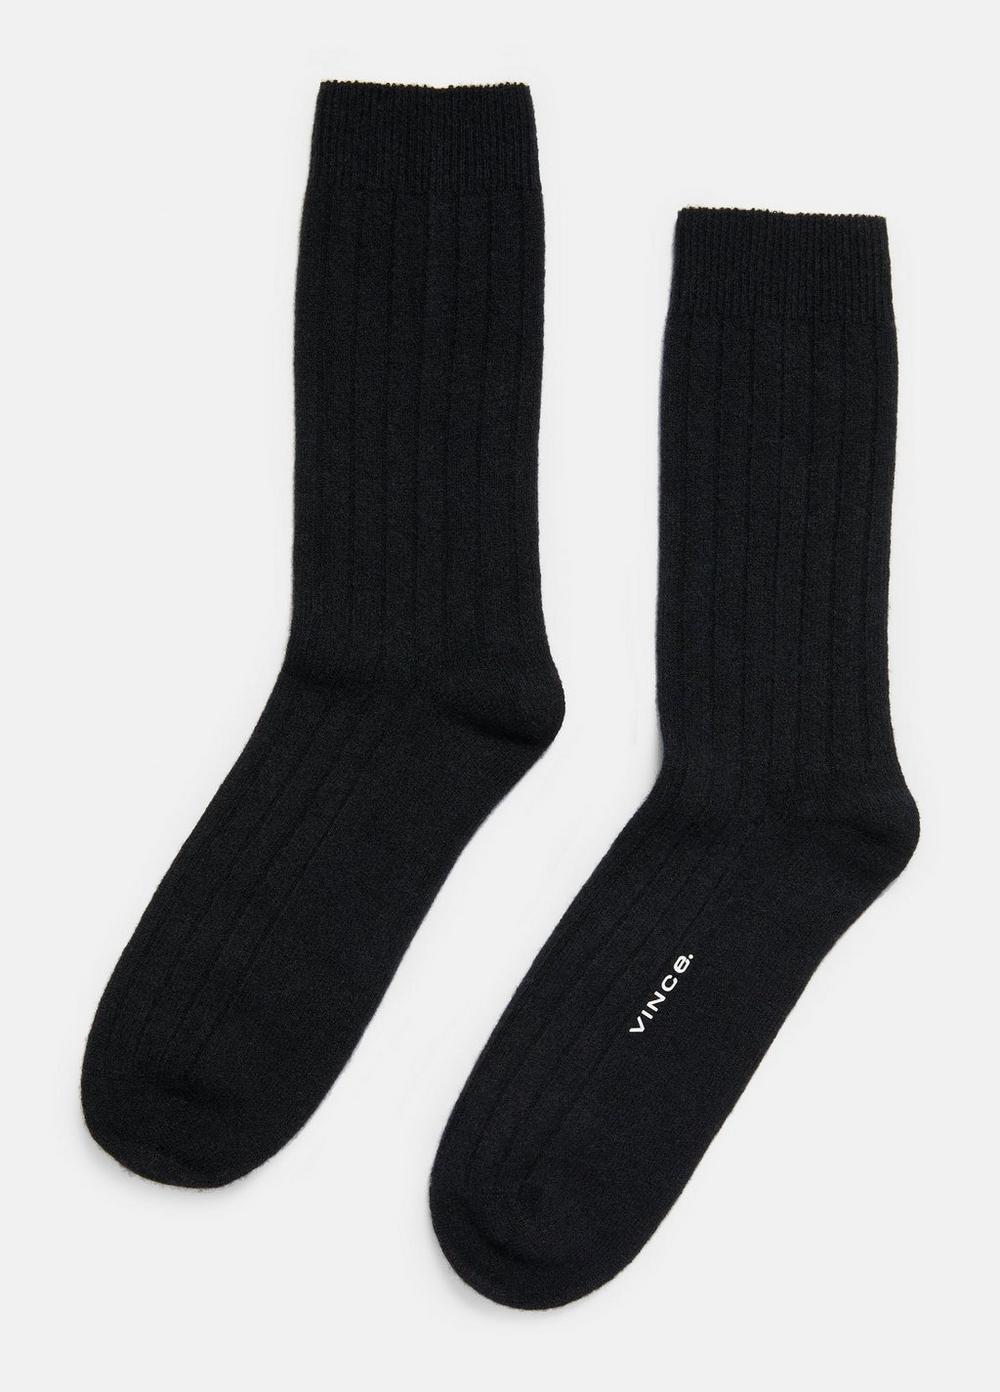 Cashmere Rib Sock, Black, Size M/L Vince